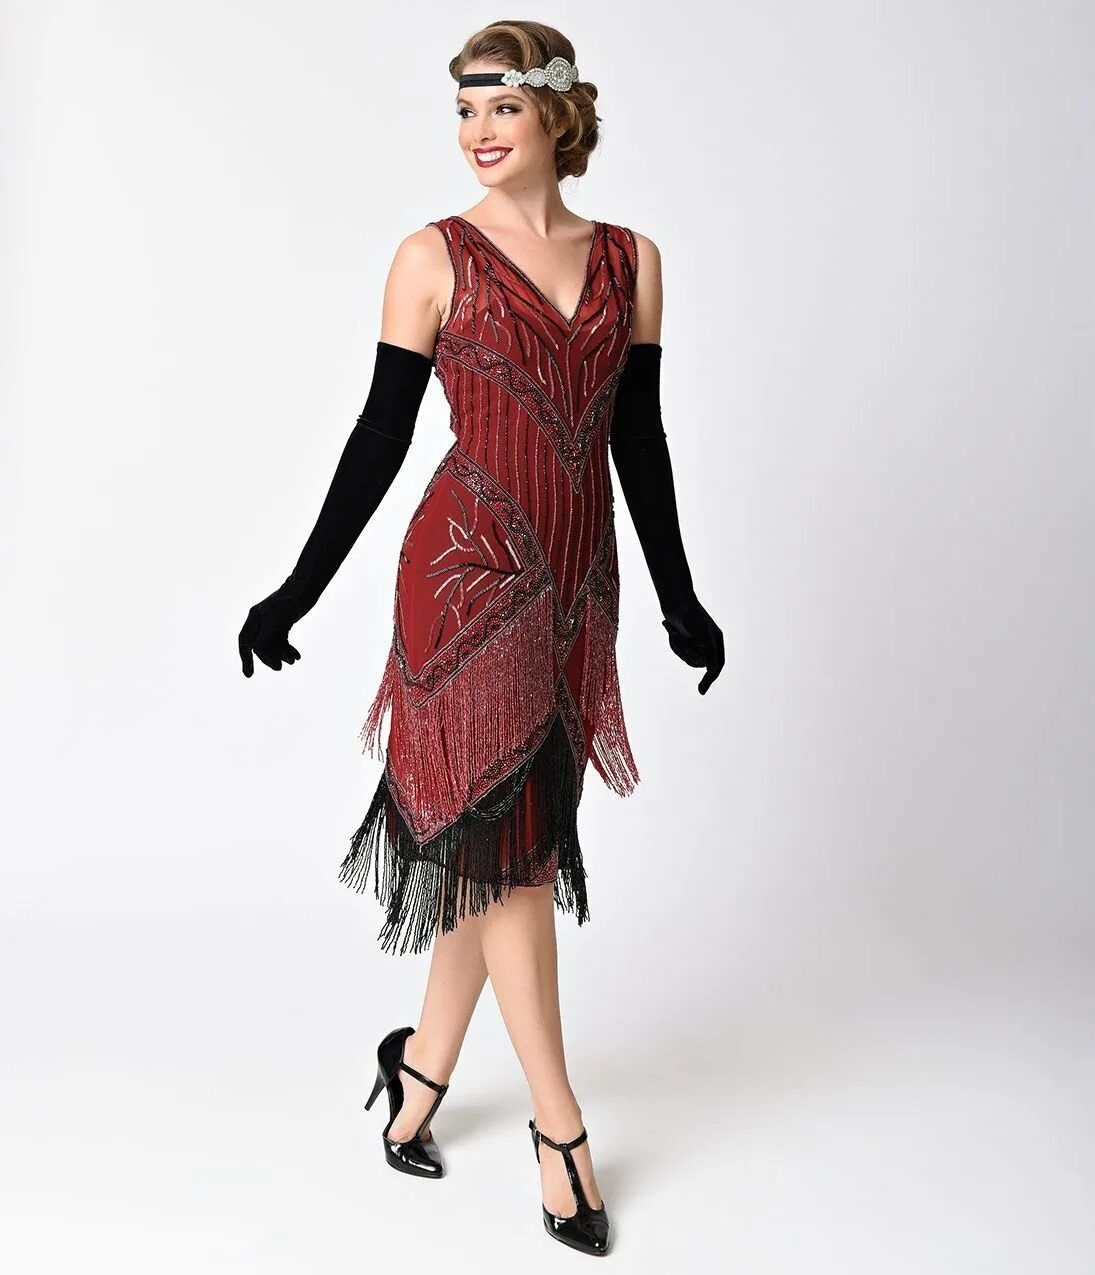 Платье флэппер 1920. 20е годы мода Великий Гэтсби. Стиль Гэтсби Америка 20-х. Стиль Чикаго Великий Гэтсби.